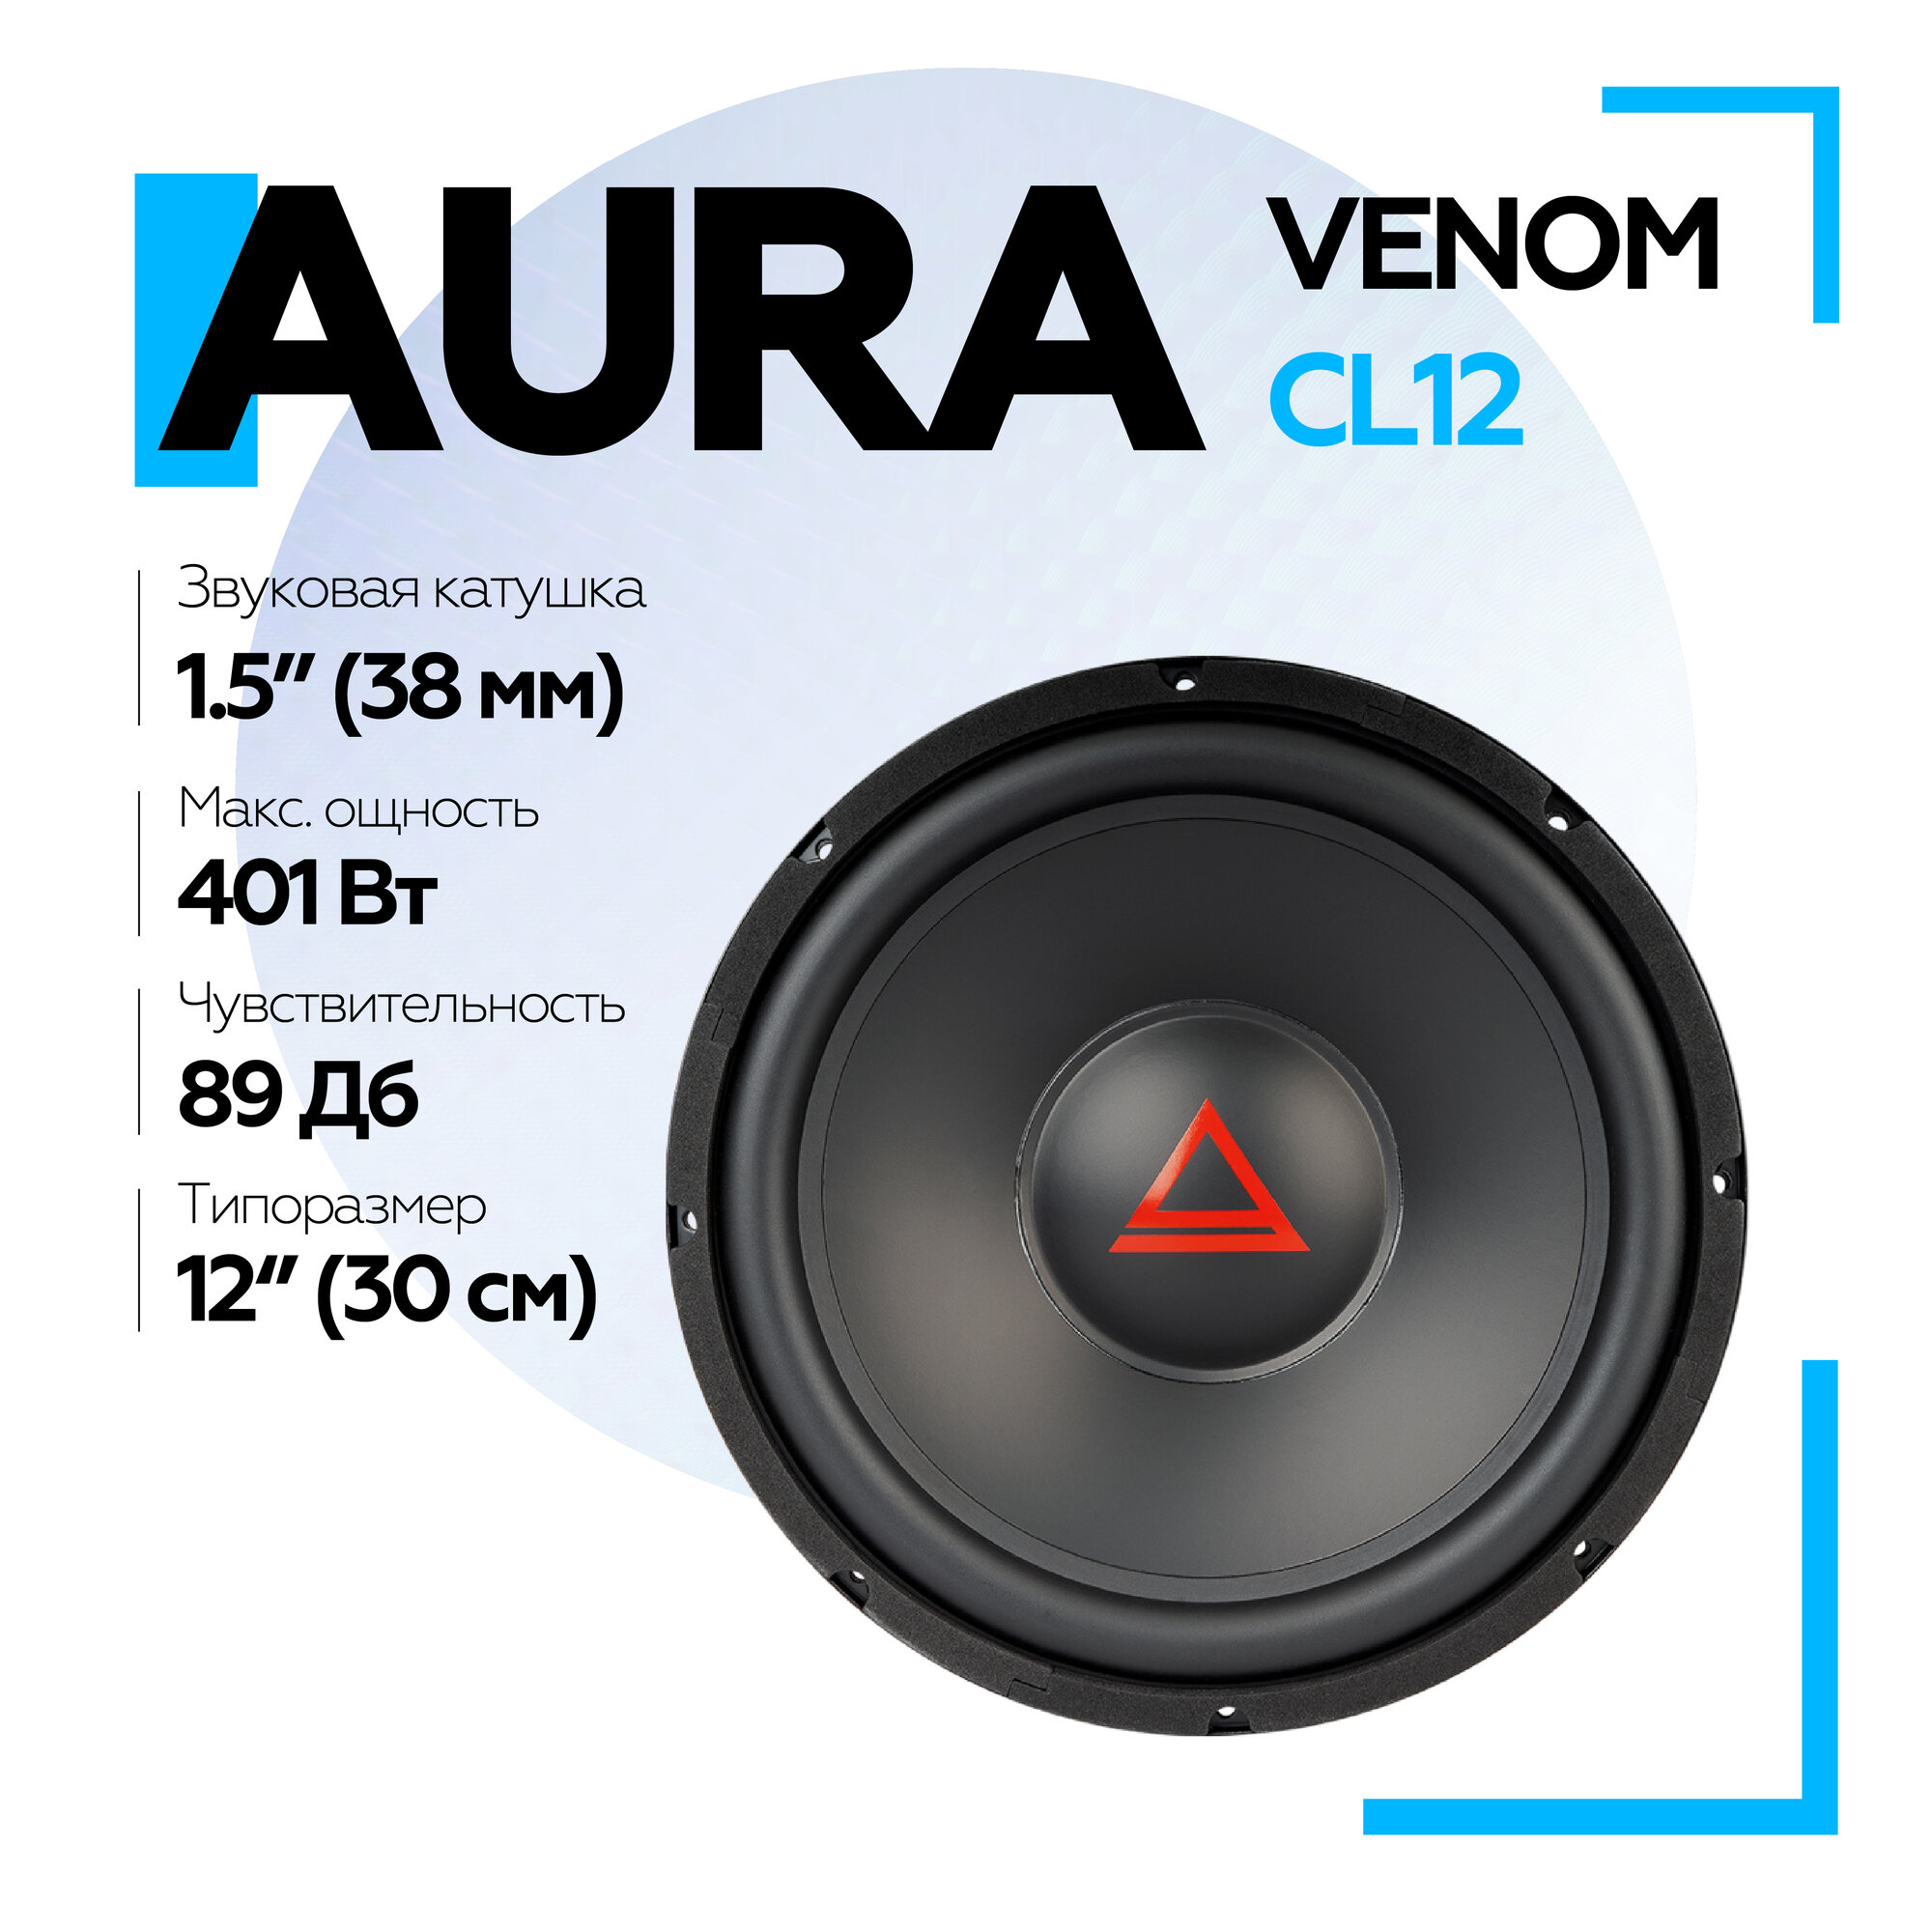 Сабвуфер Aura VENOM-CL12 12" (30 см), сабвуферный динамик 12 дюймов в автомобиль